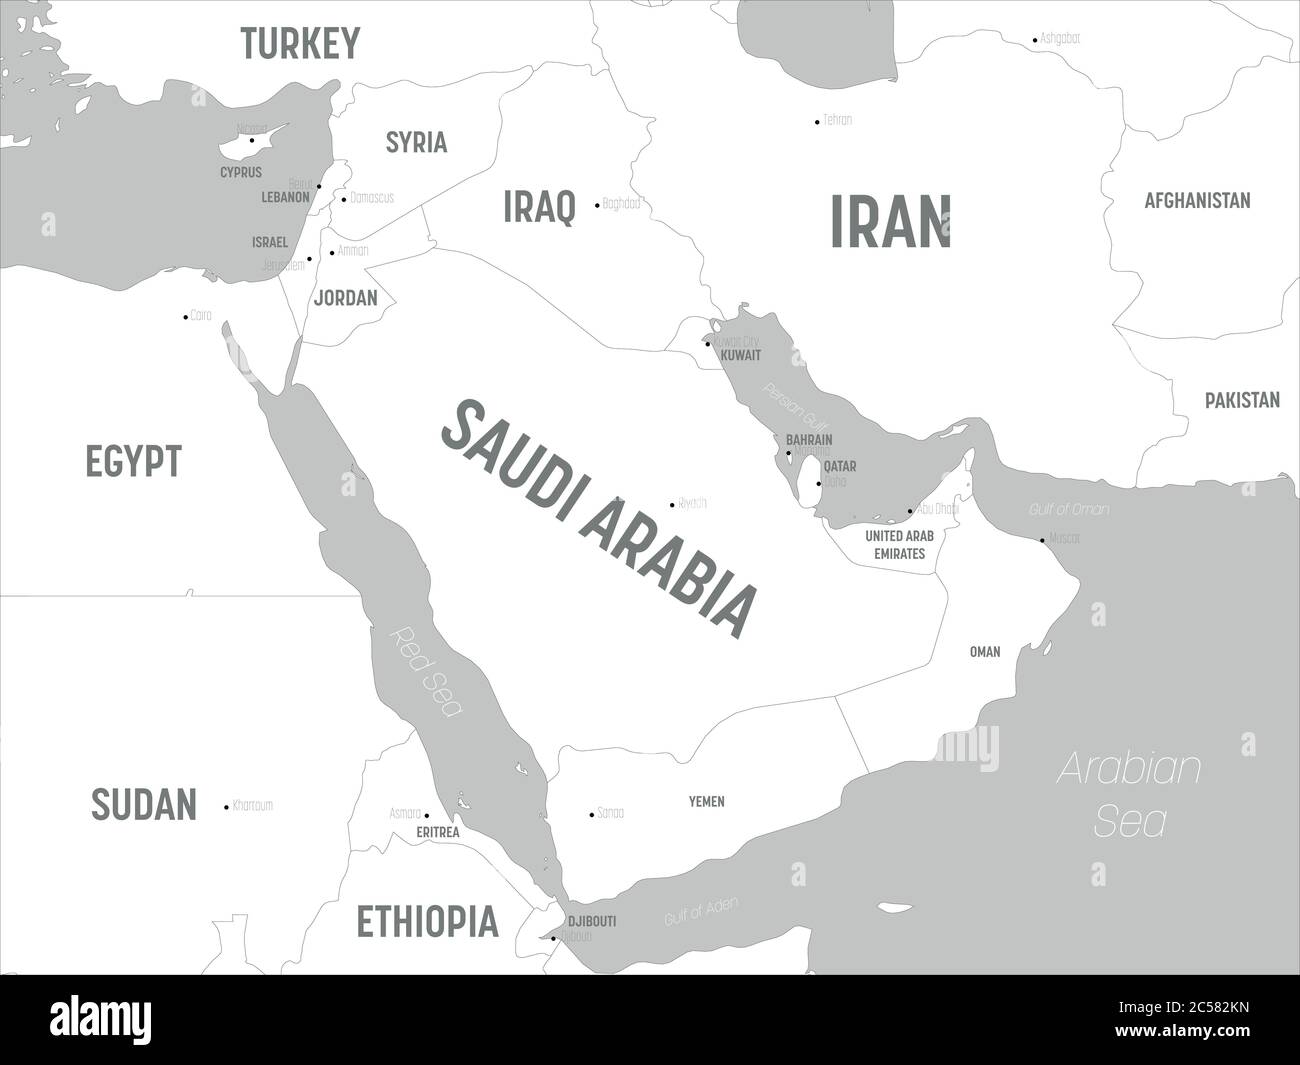 Karte des Nahen Ostens - weiße Länder und graues Wasser. Detaillierte politische Karte des Nahen Ostens und der arabischen Halbinsel mit Land, Hauptstadt, Meer und Meer Namen Kennzeichnung. Stock Vektor